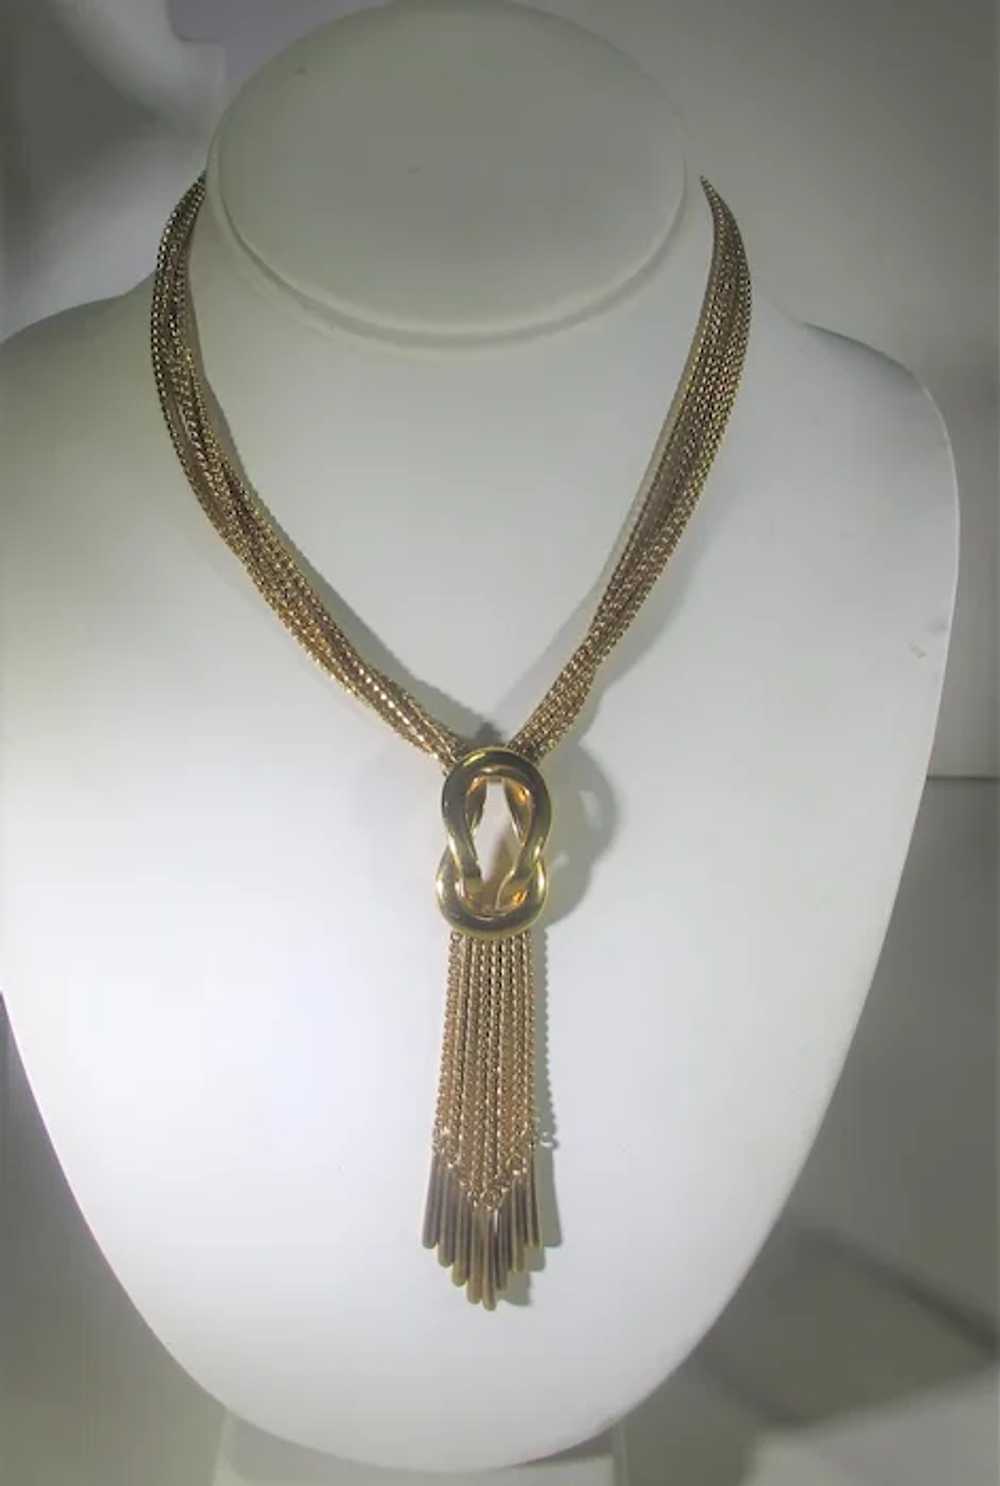 Vintage Monet Gold Tone Chain Necklace - image 2